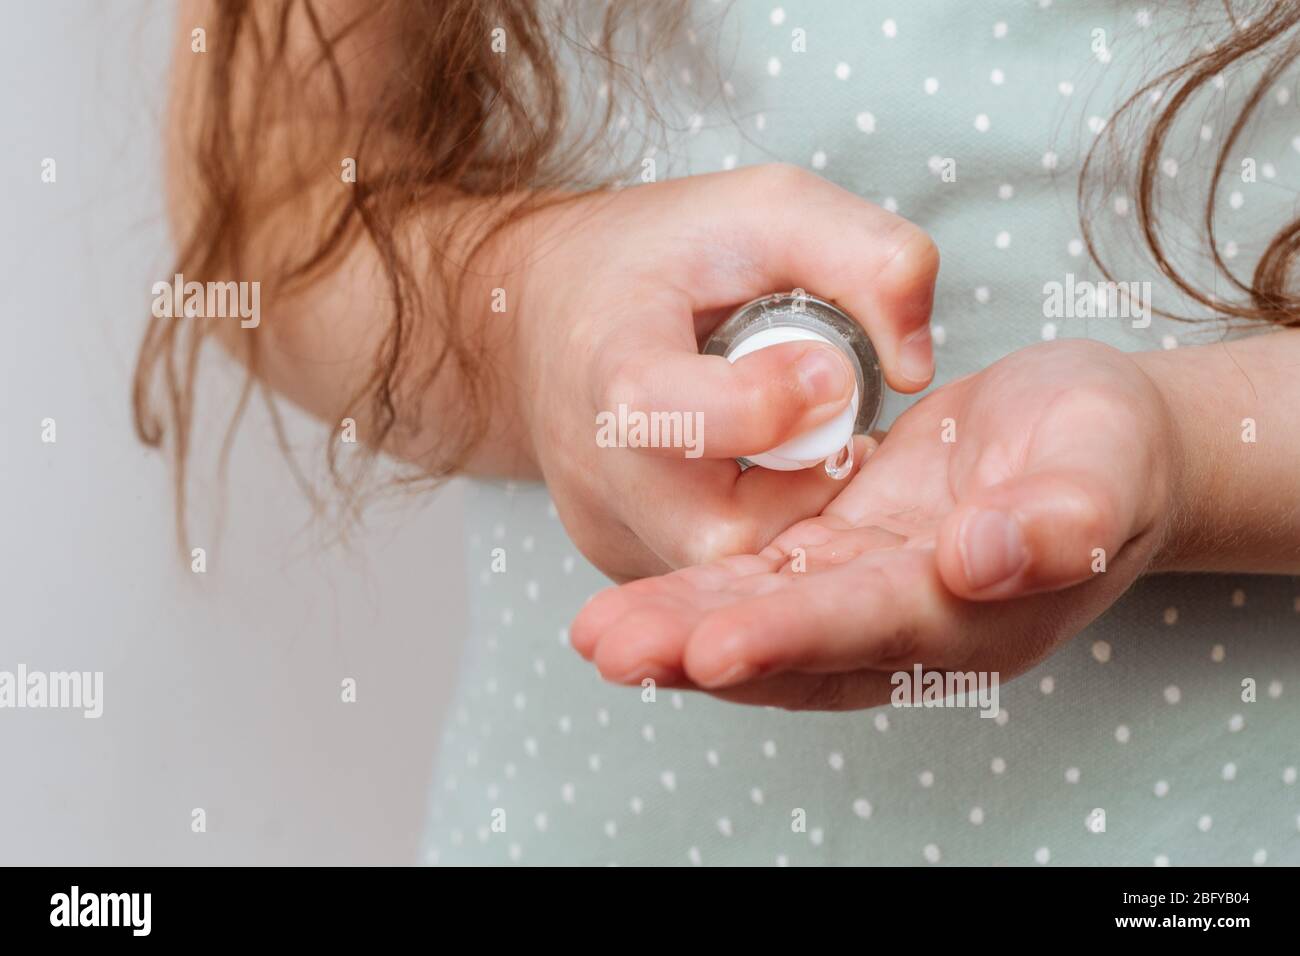 L'enfant utilise un désinfectant pour les mains. Concept d'hygiène personnelle. Banque D'Images